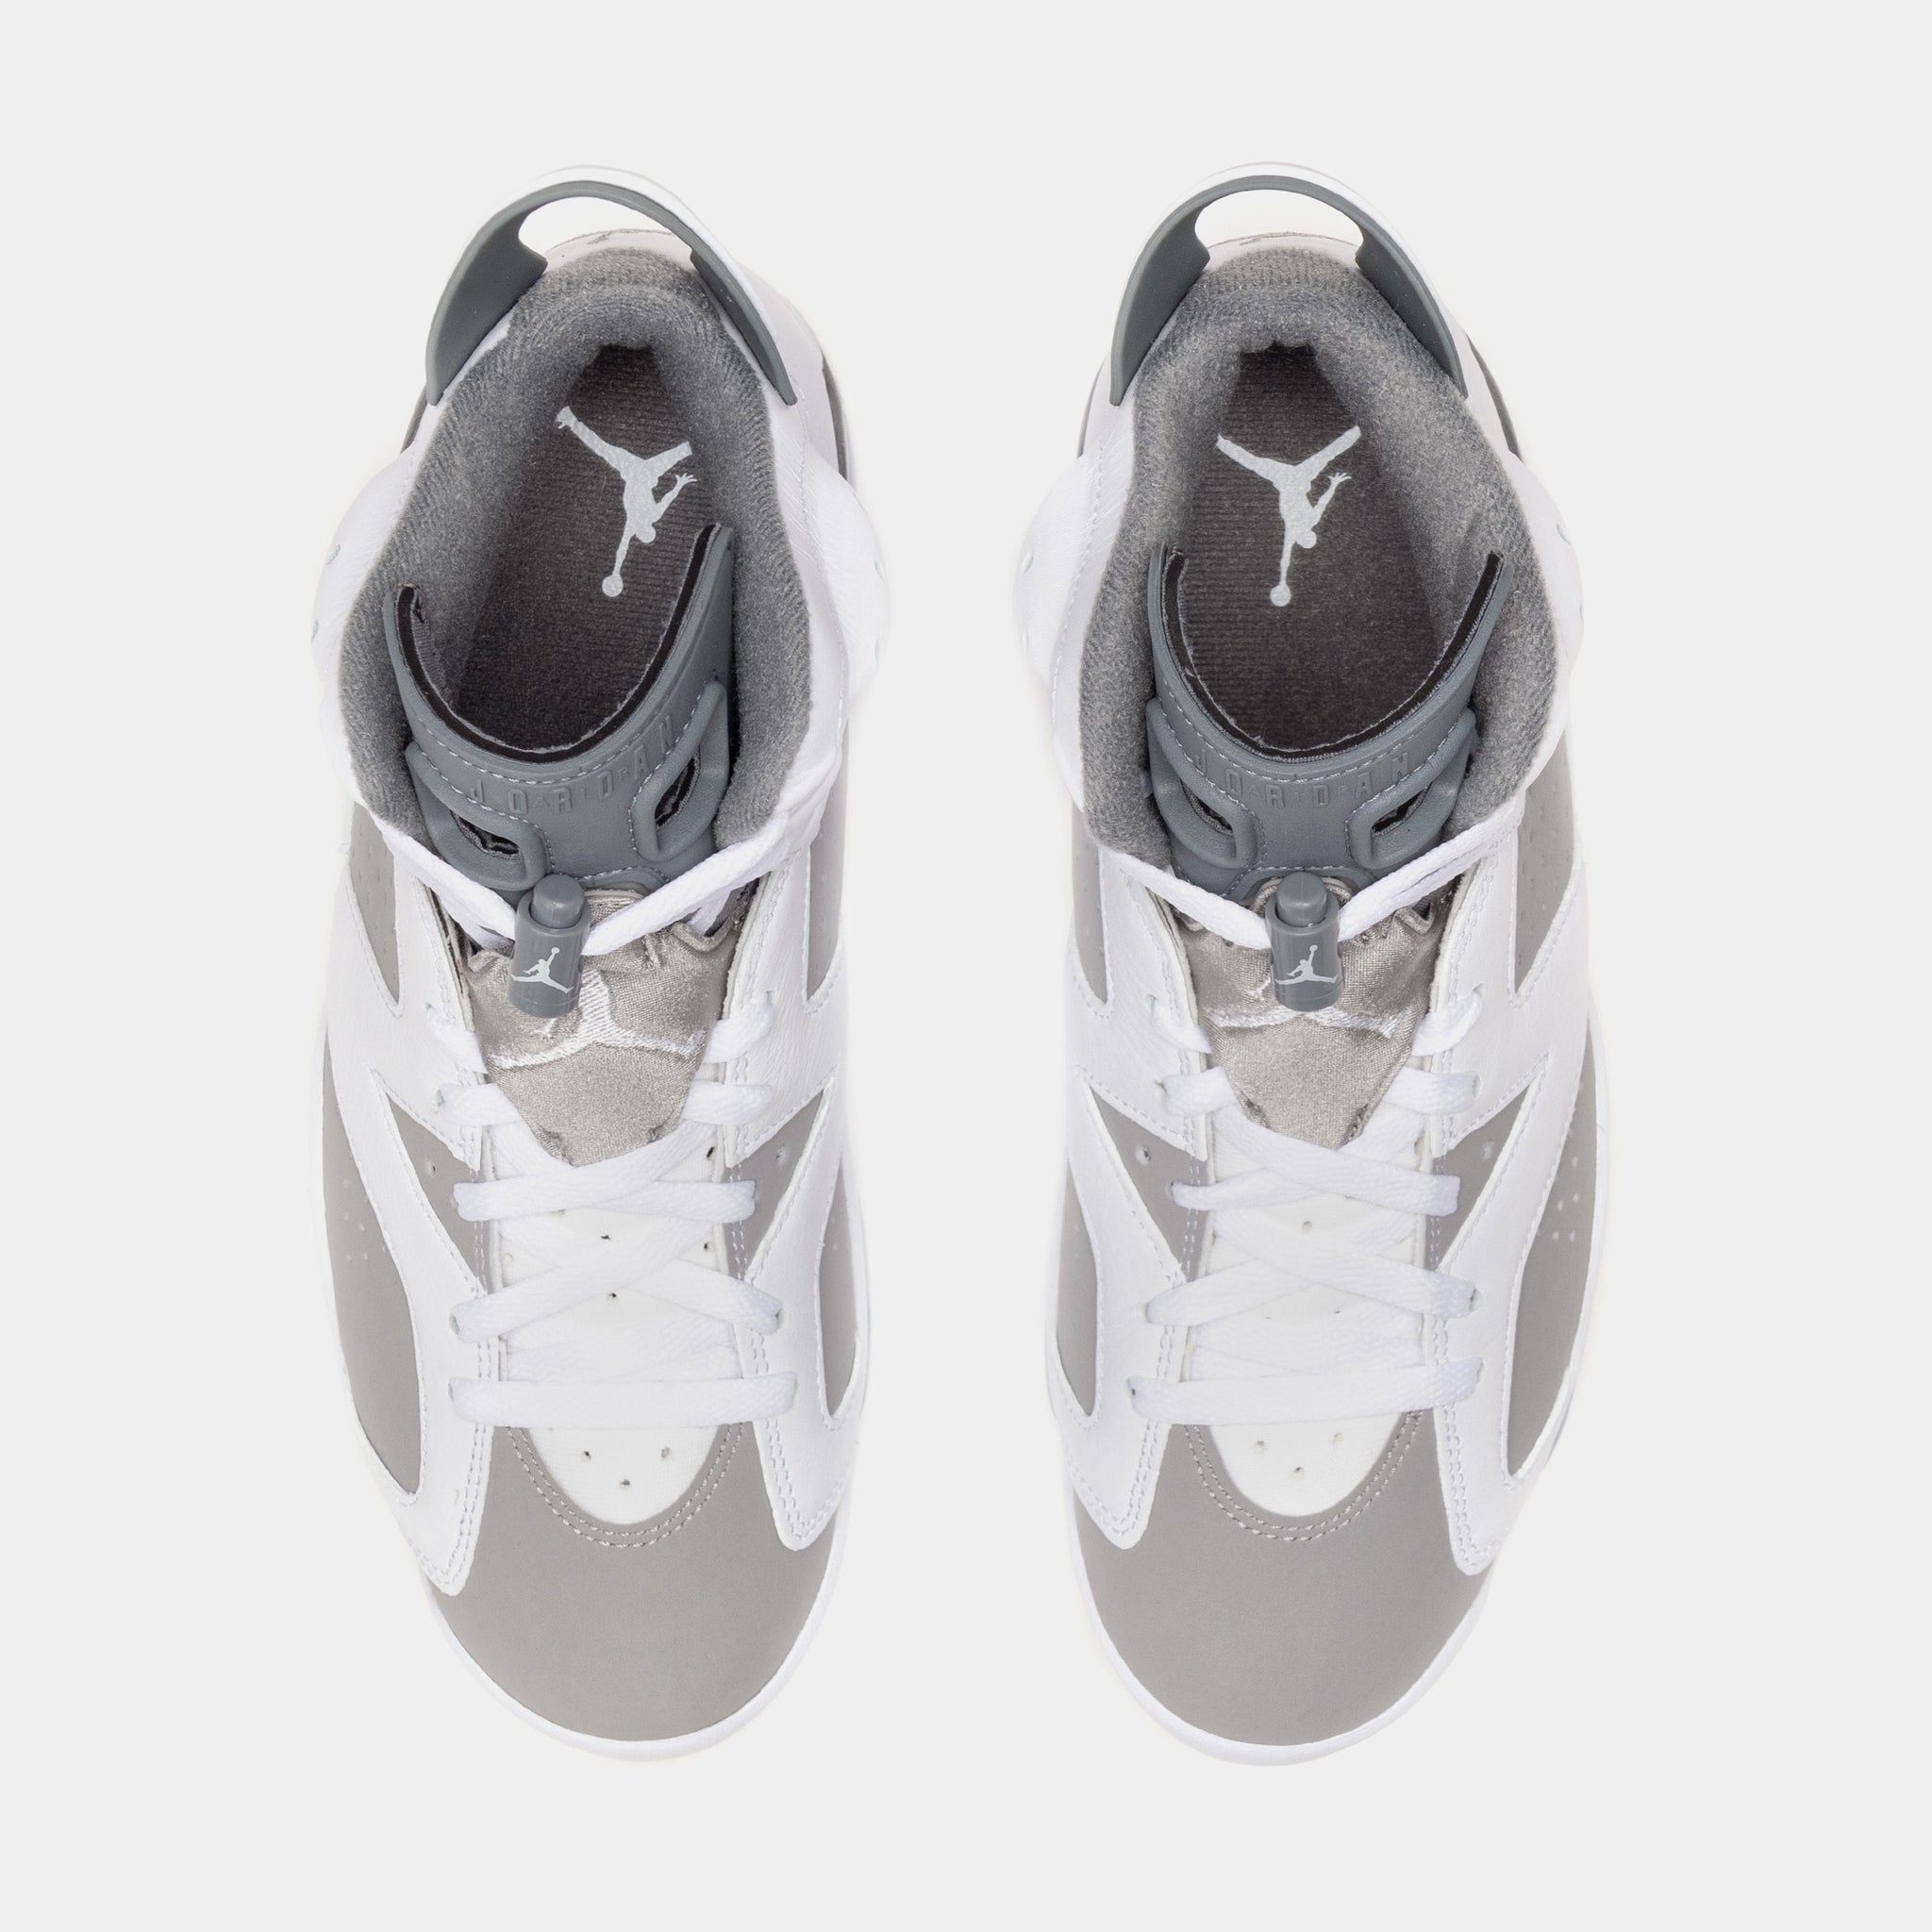 Jordan Air Jordan 6 Retro Cool Grey Mens Lifestyle Shoes Grey